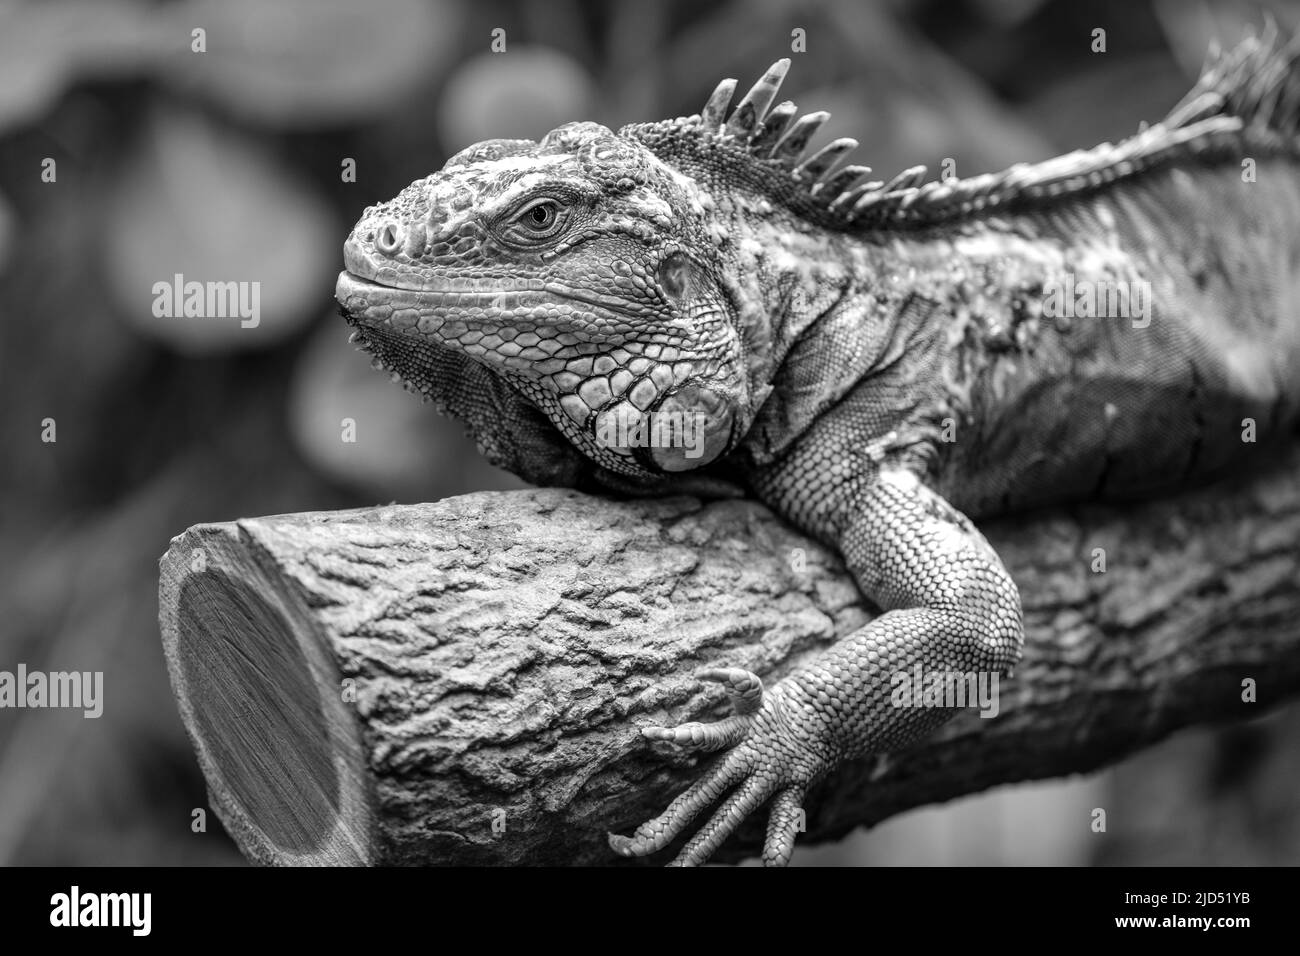 Vista de cerca de una iguana verde descansando sobre un árbol en blanco y negro Foto de stock